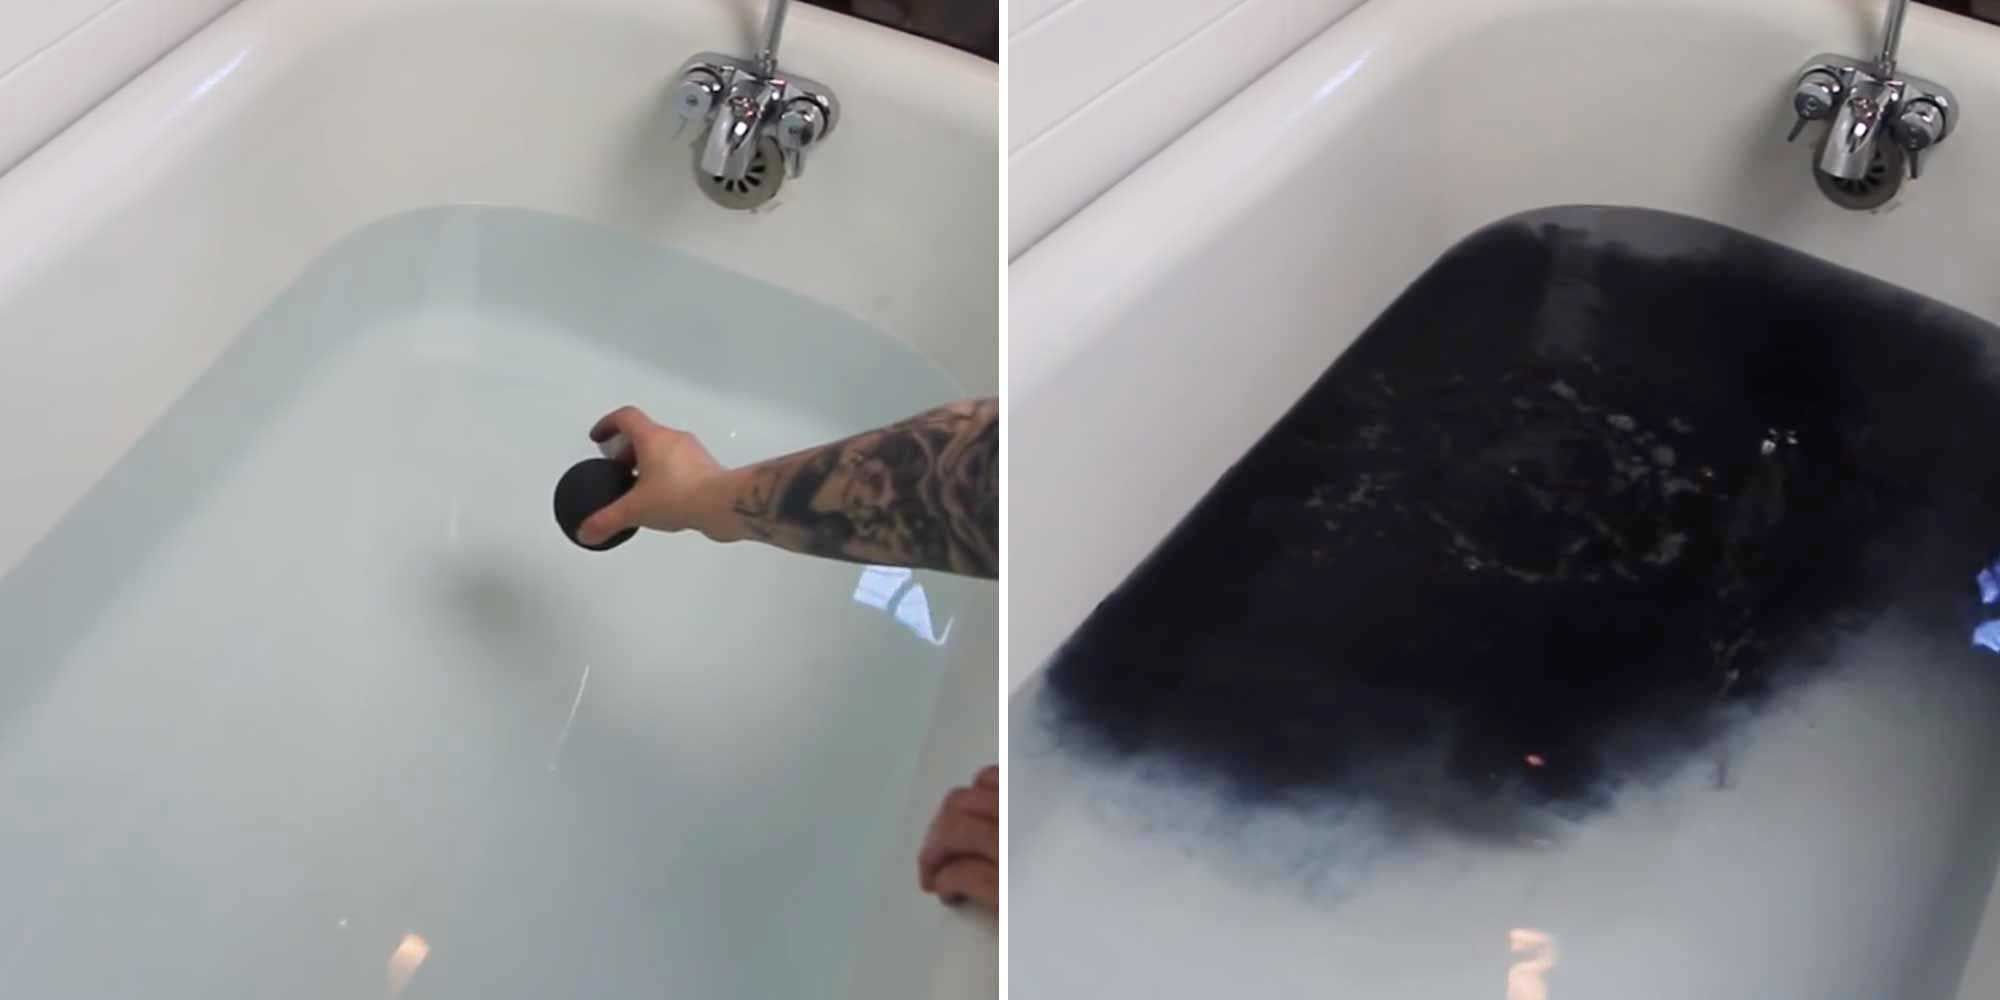 Можно купаться с бомбочками. Черная бомбочка для ванны. Бомбочка для ванны в ванне. Черная вода в ванной. Черная бомбочка для ванны в воде.